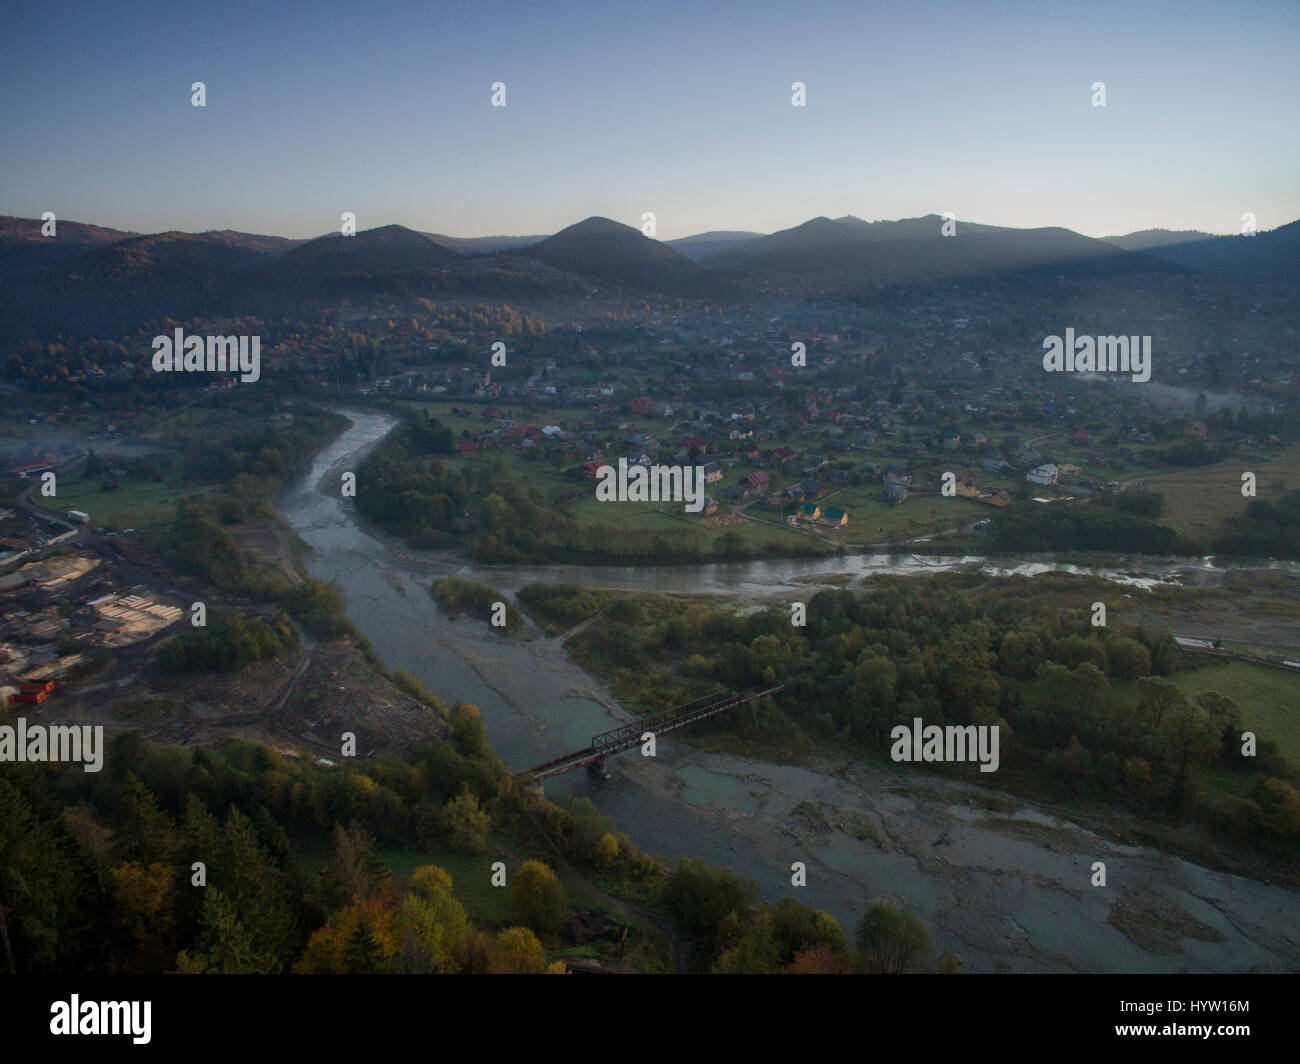 Vue aérienne sur le village de yapahuwa dans la région des Carpates de l'ouest de l'Ukraine comme le soleil se lève derrière les montagnes lointaines Banque D'Images